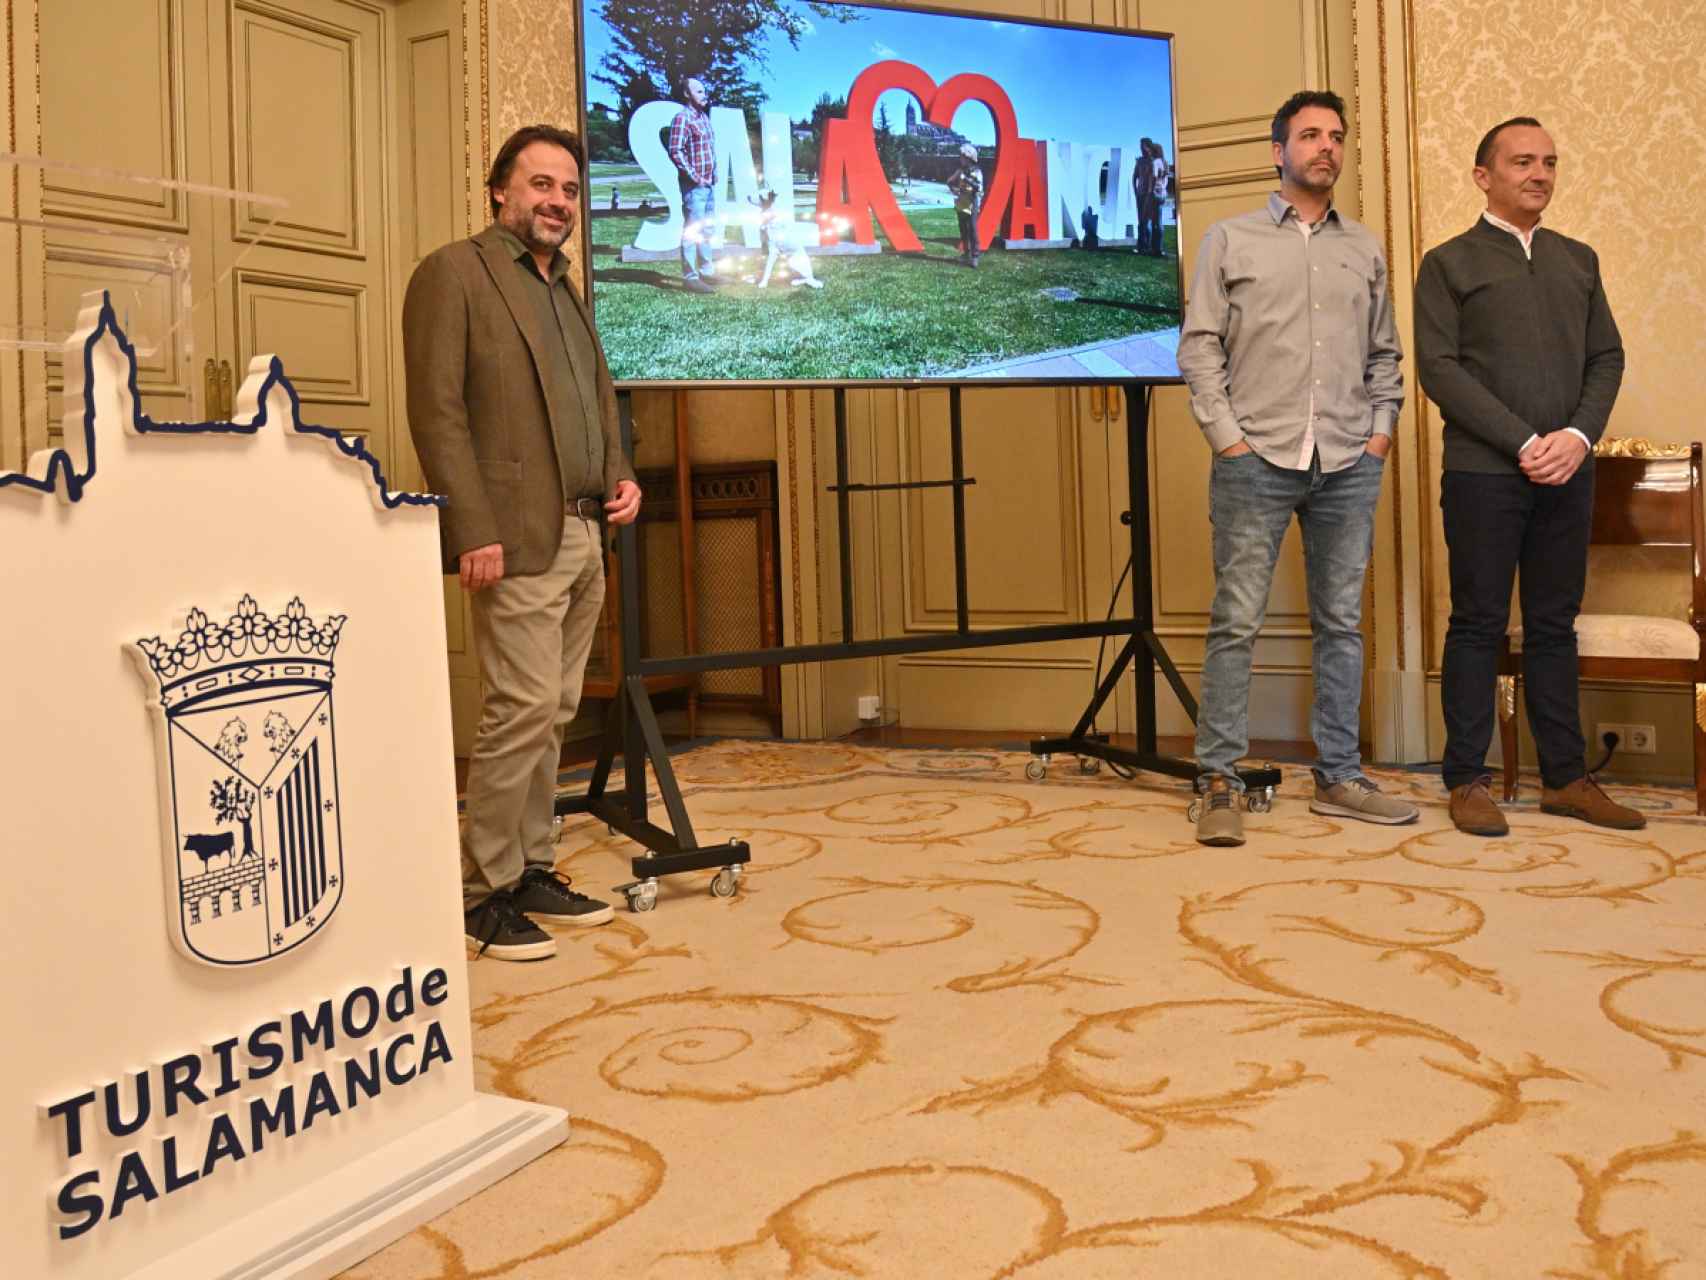 Presentación de las nuevas letras de turismo de Salamanca